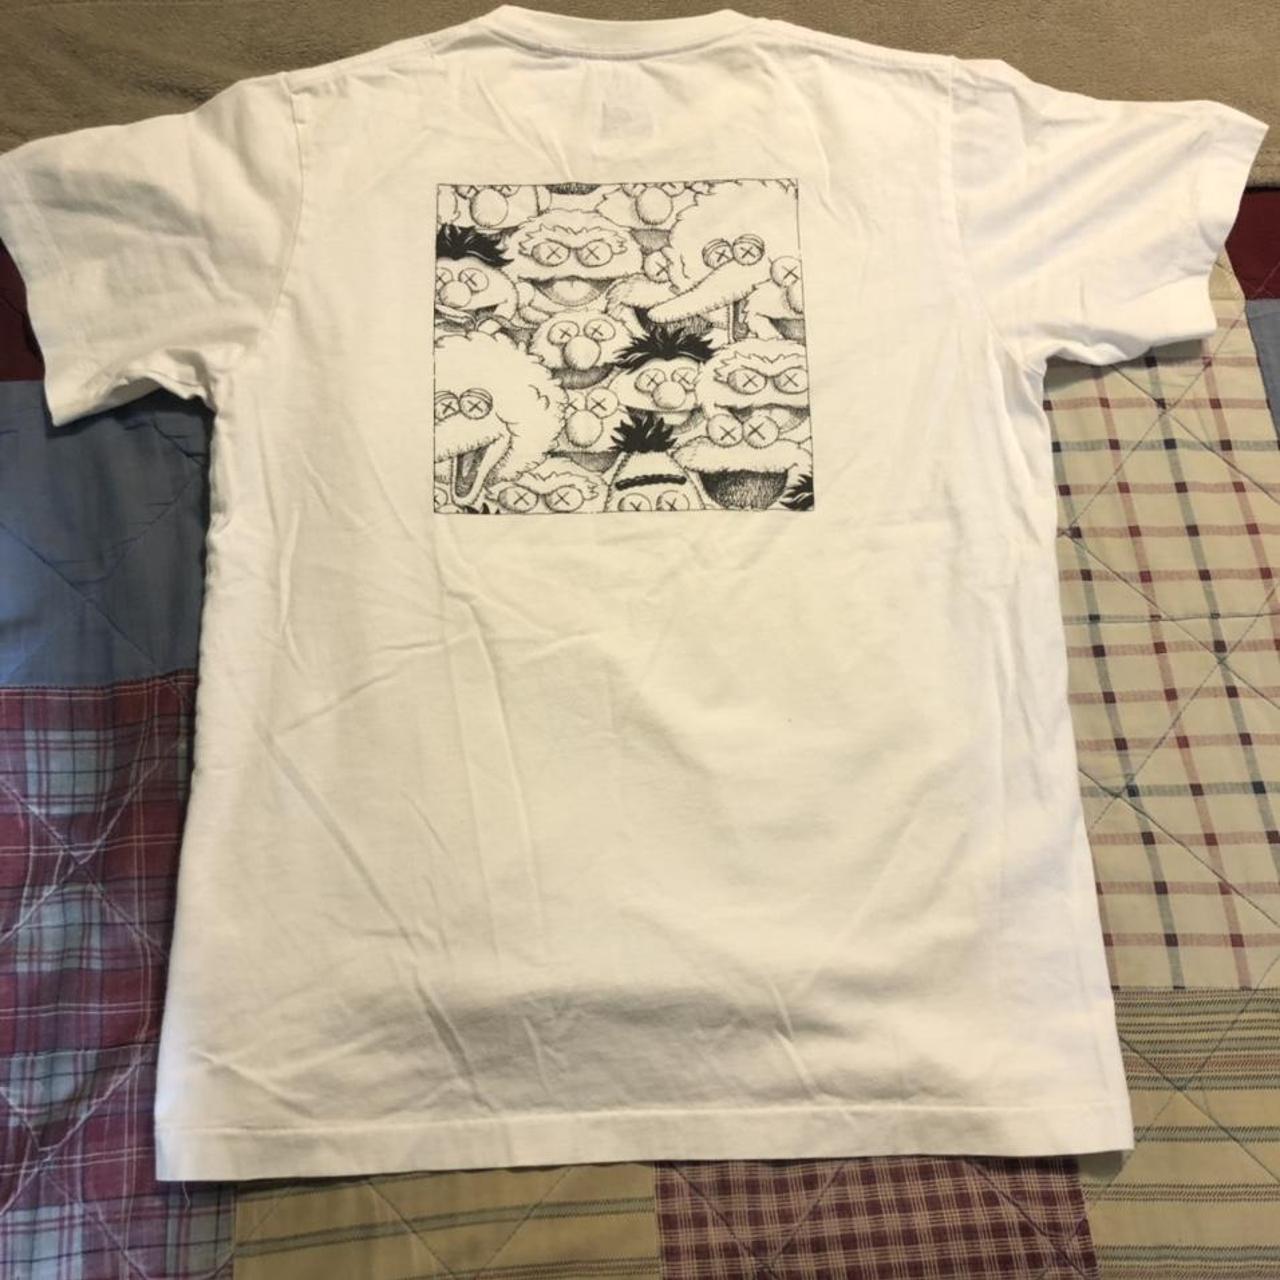 Kaws Men's White T-shirt (3)